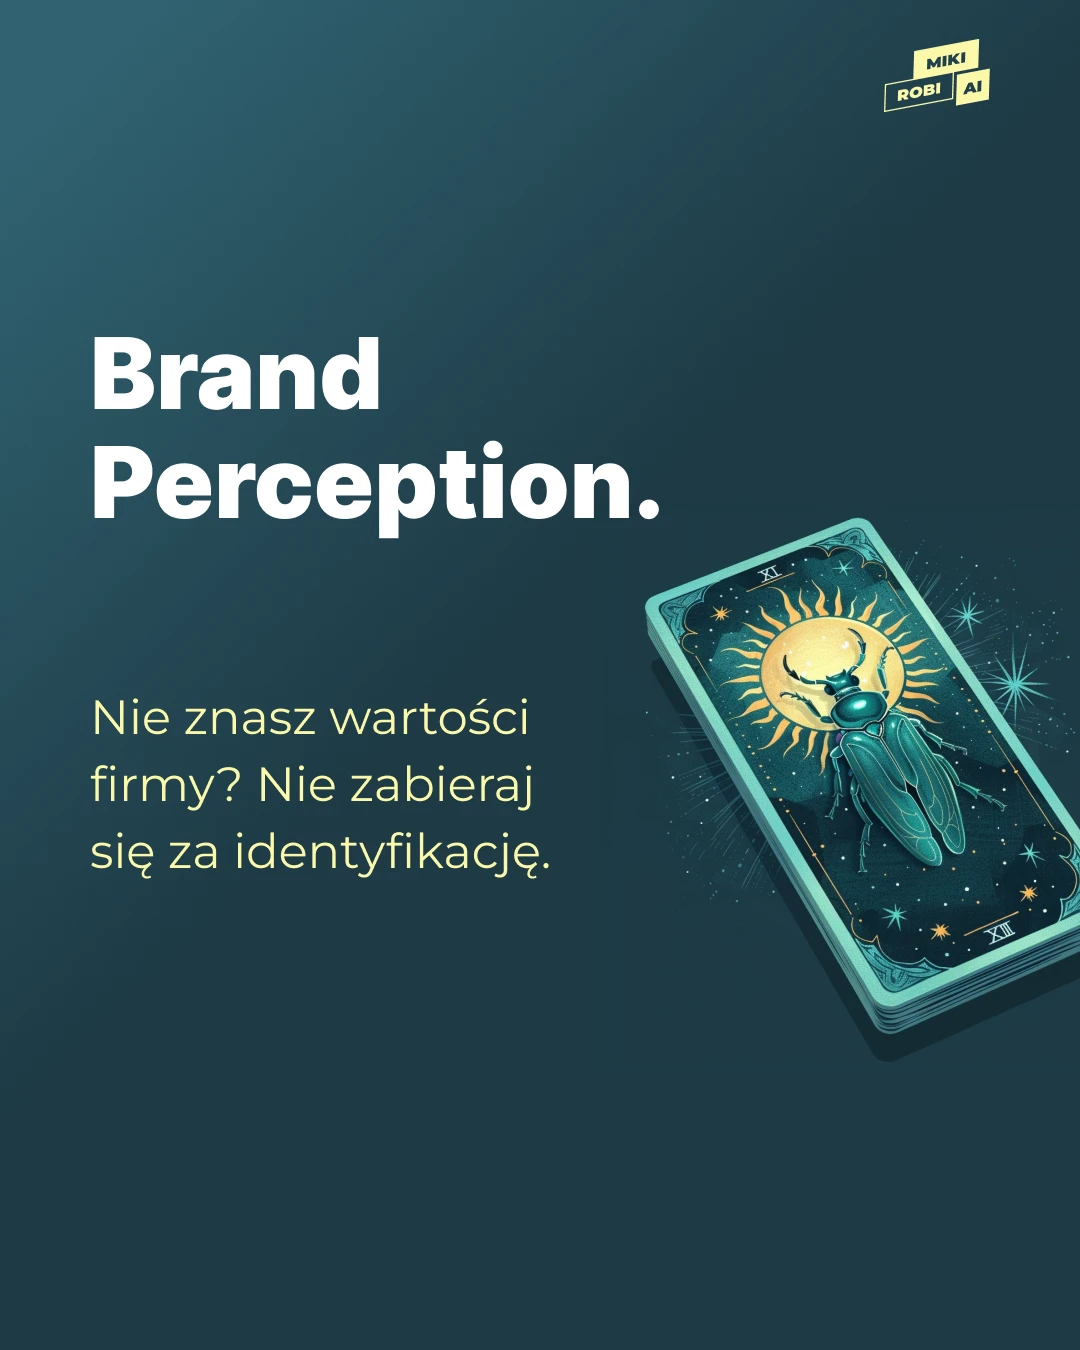 Brand Perception - Czyli jaki ma wydźwięk nasza marka